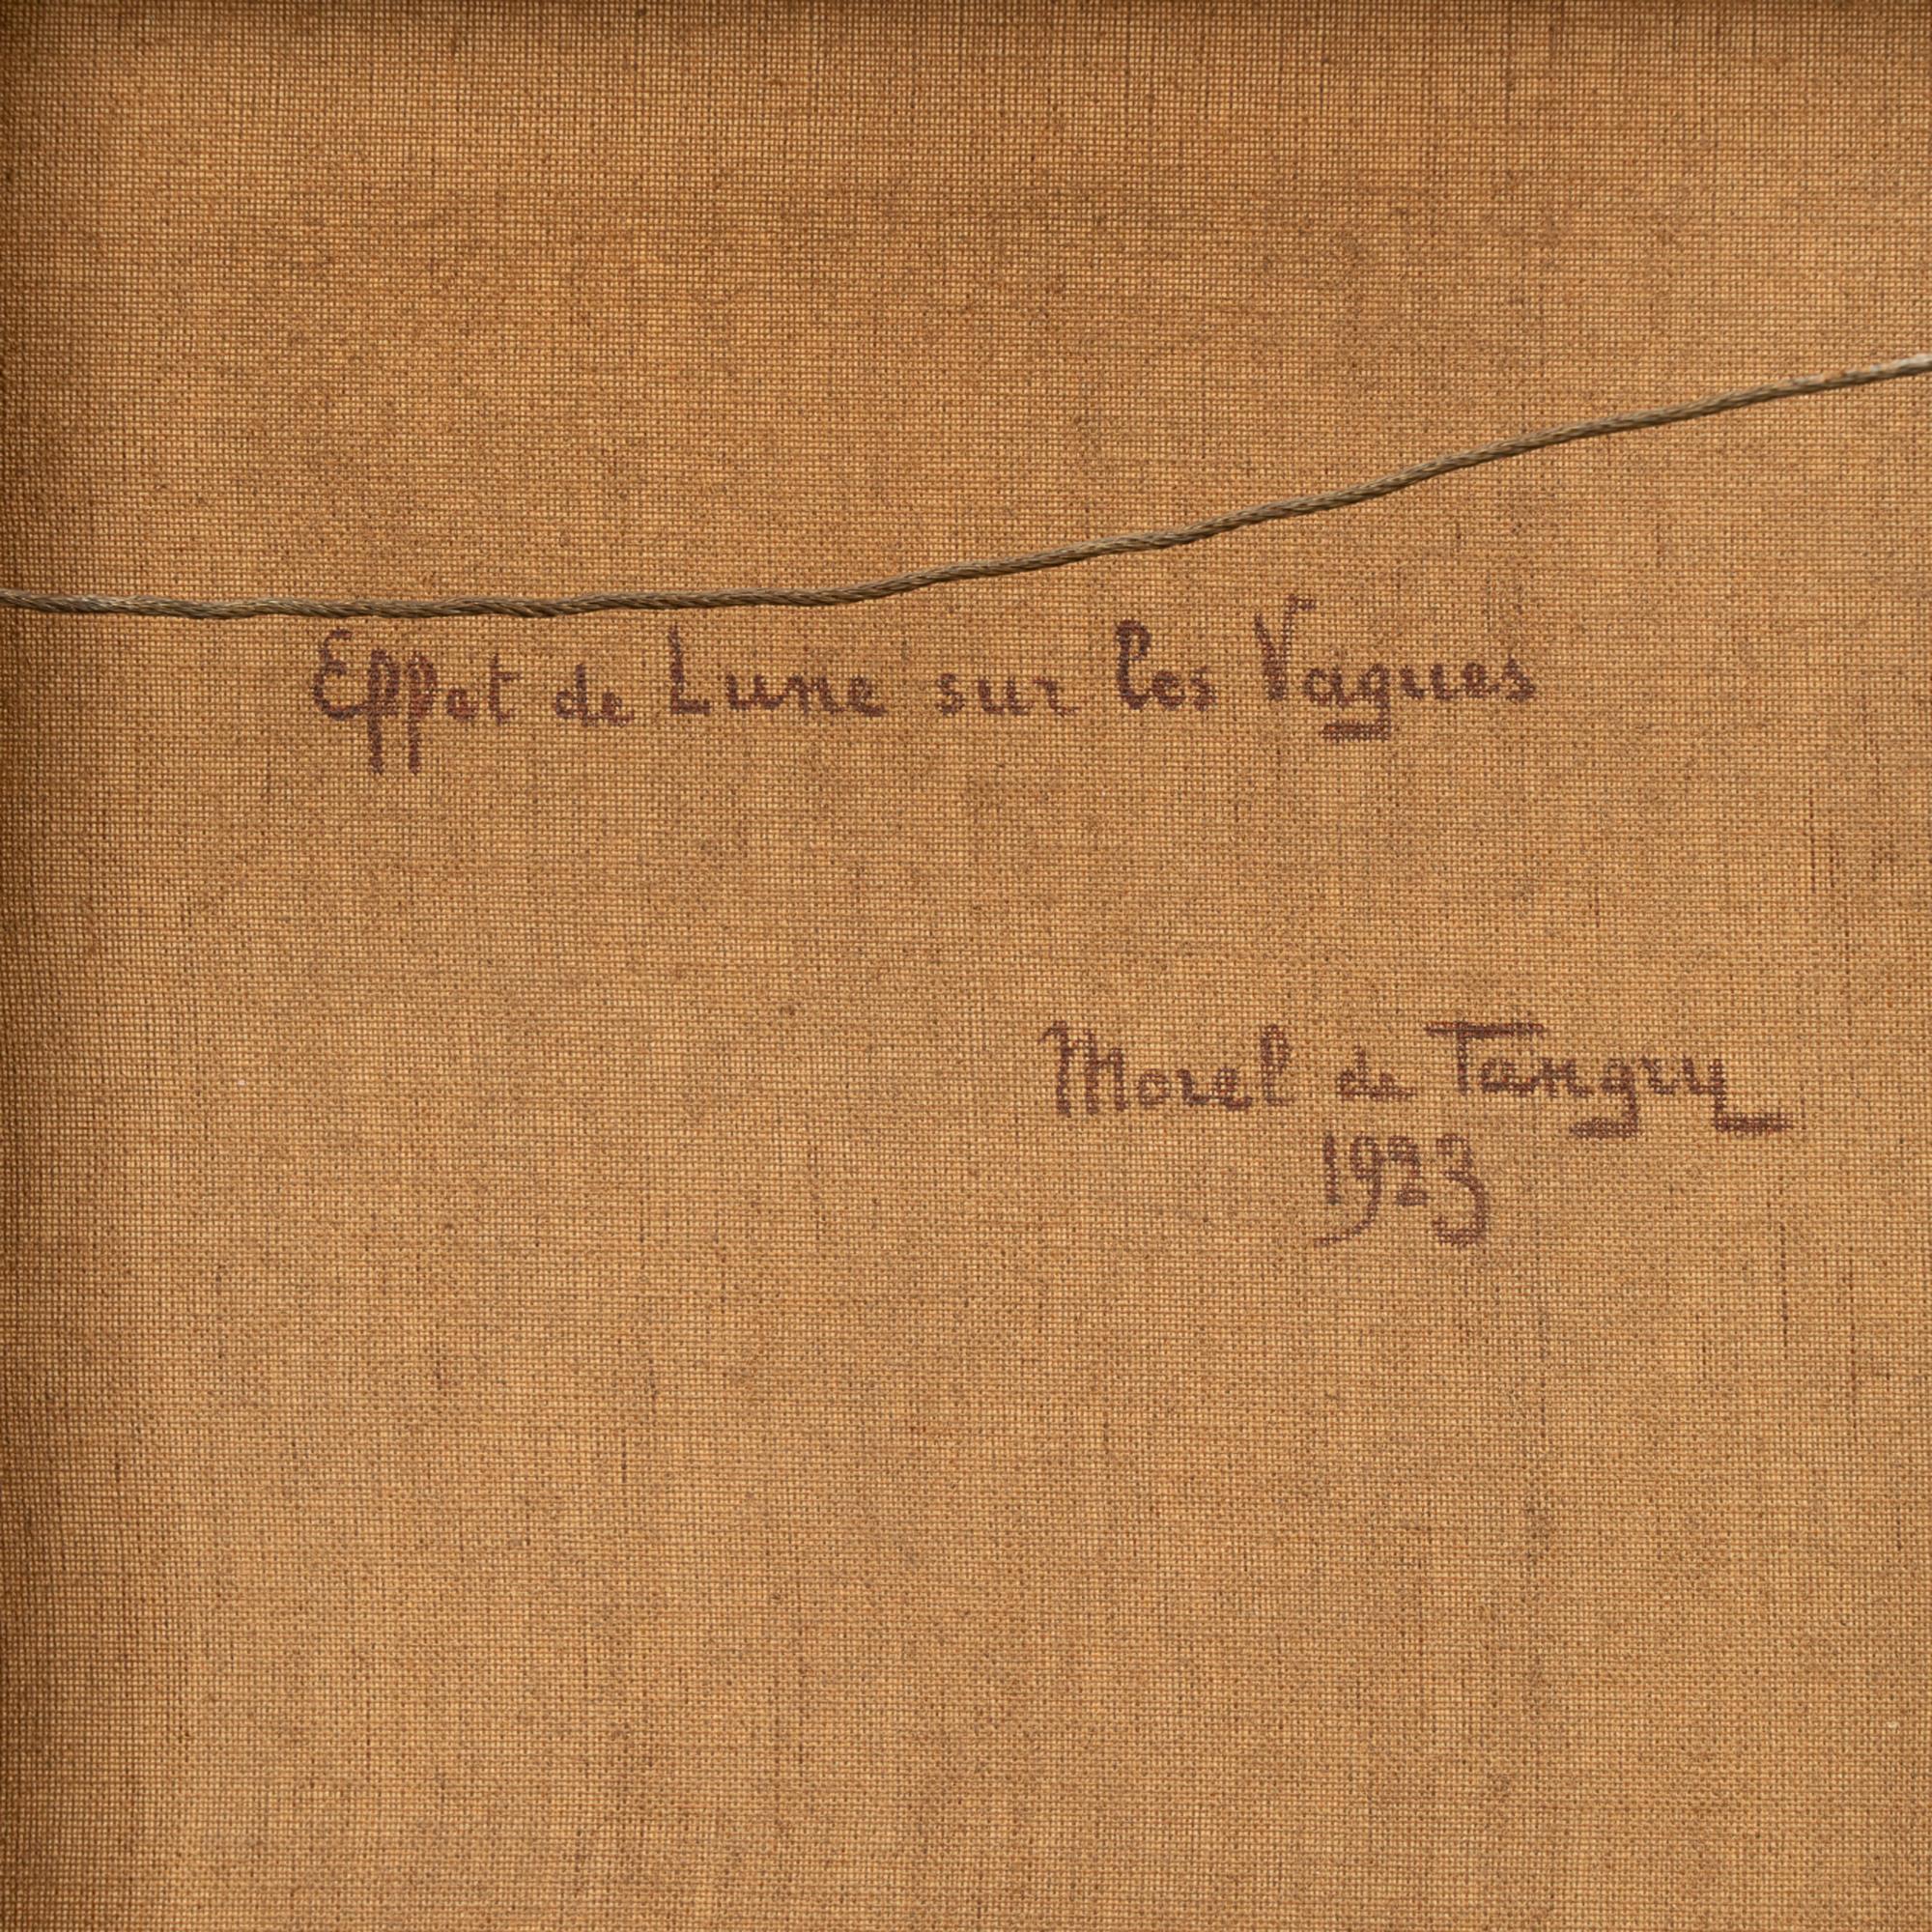 Öl auf Leinwand Gemälde von mondbeschienenen Ozeanwellen, signiert, datiert Morel de Tanguy 1923 4